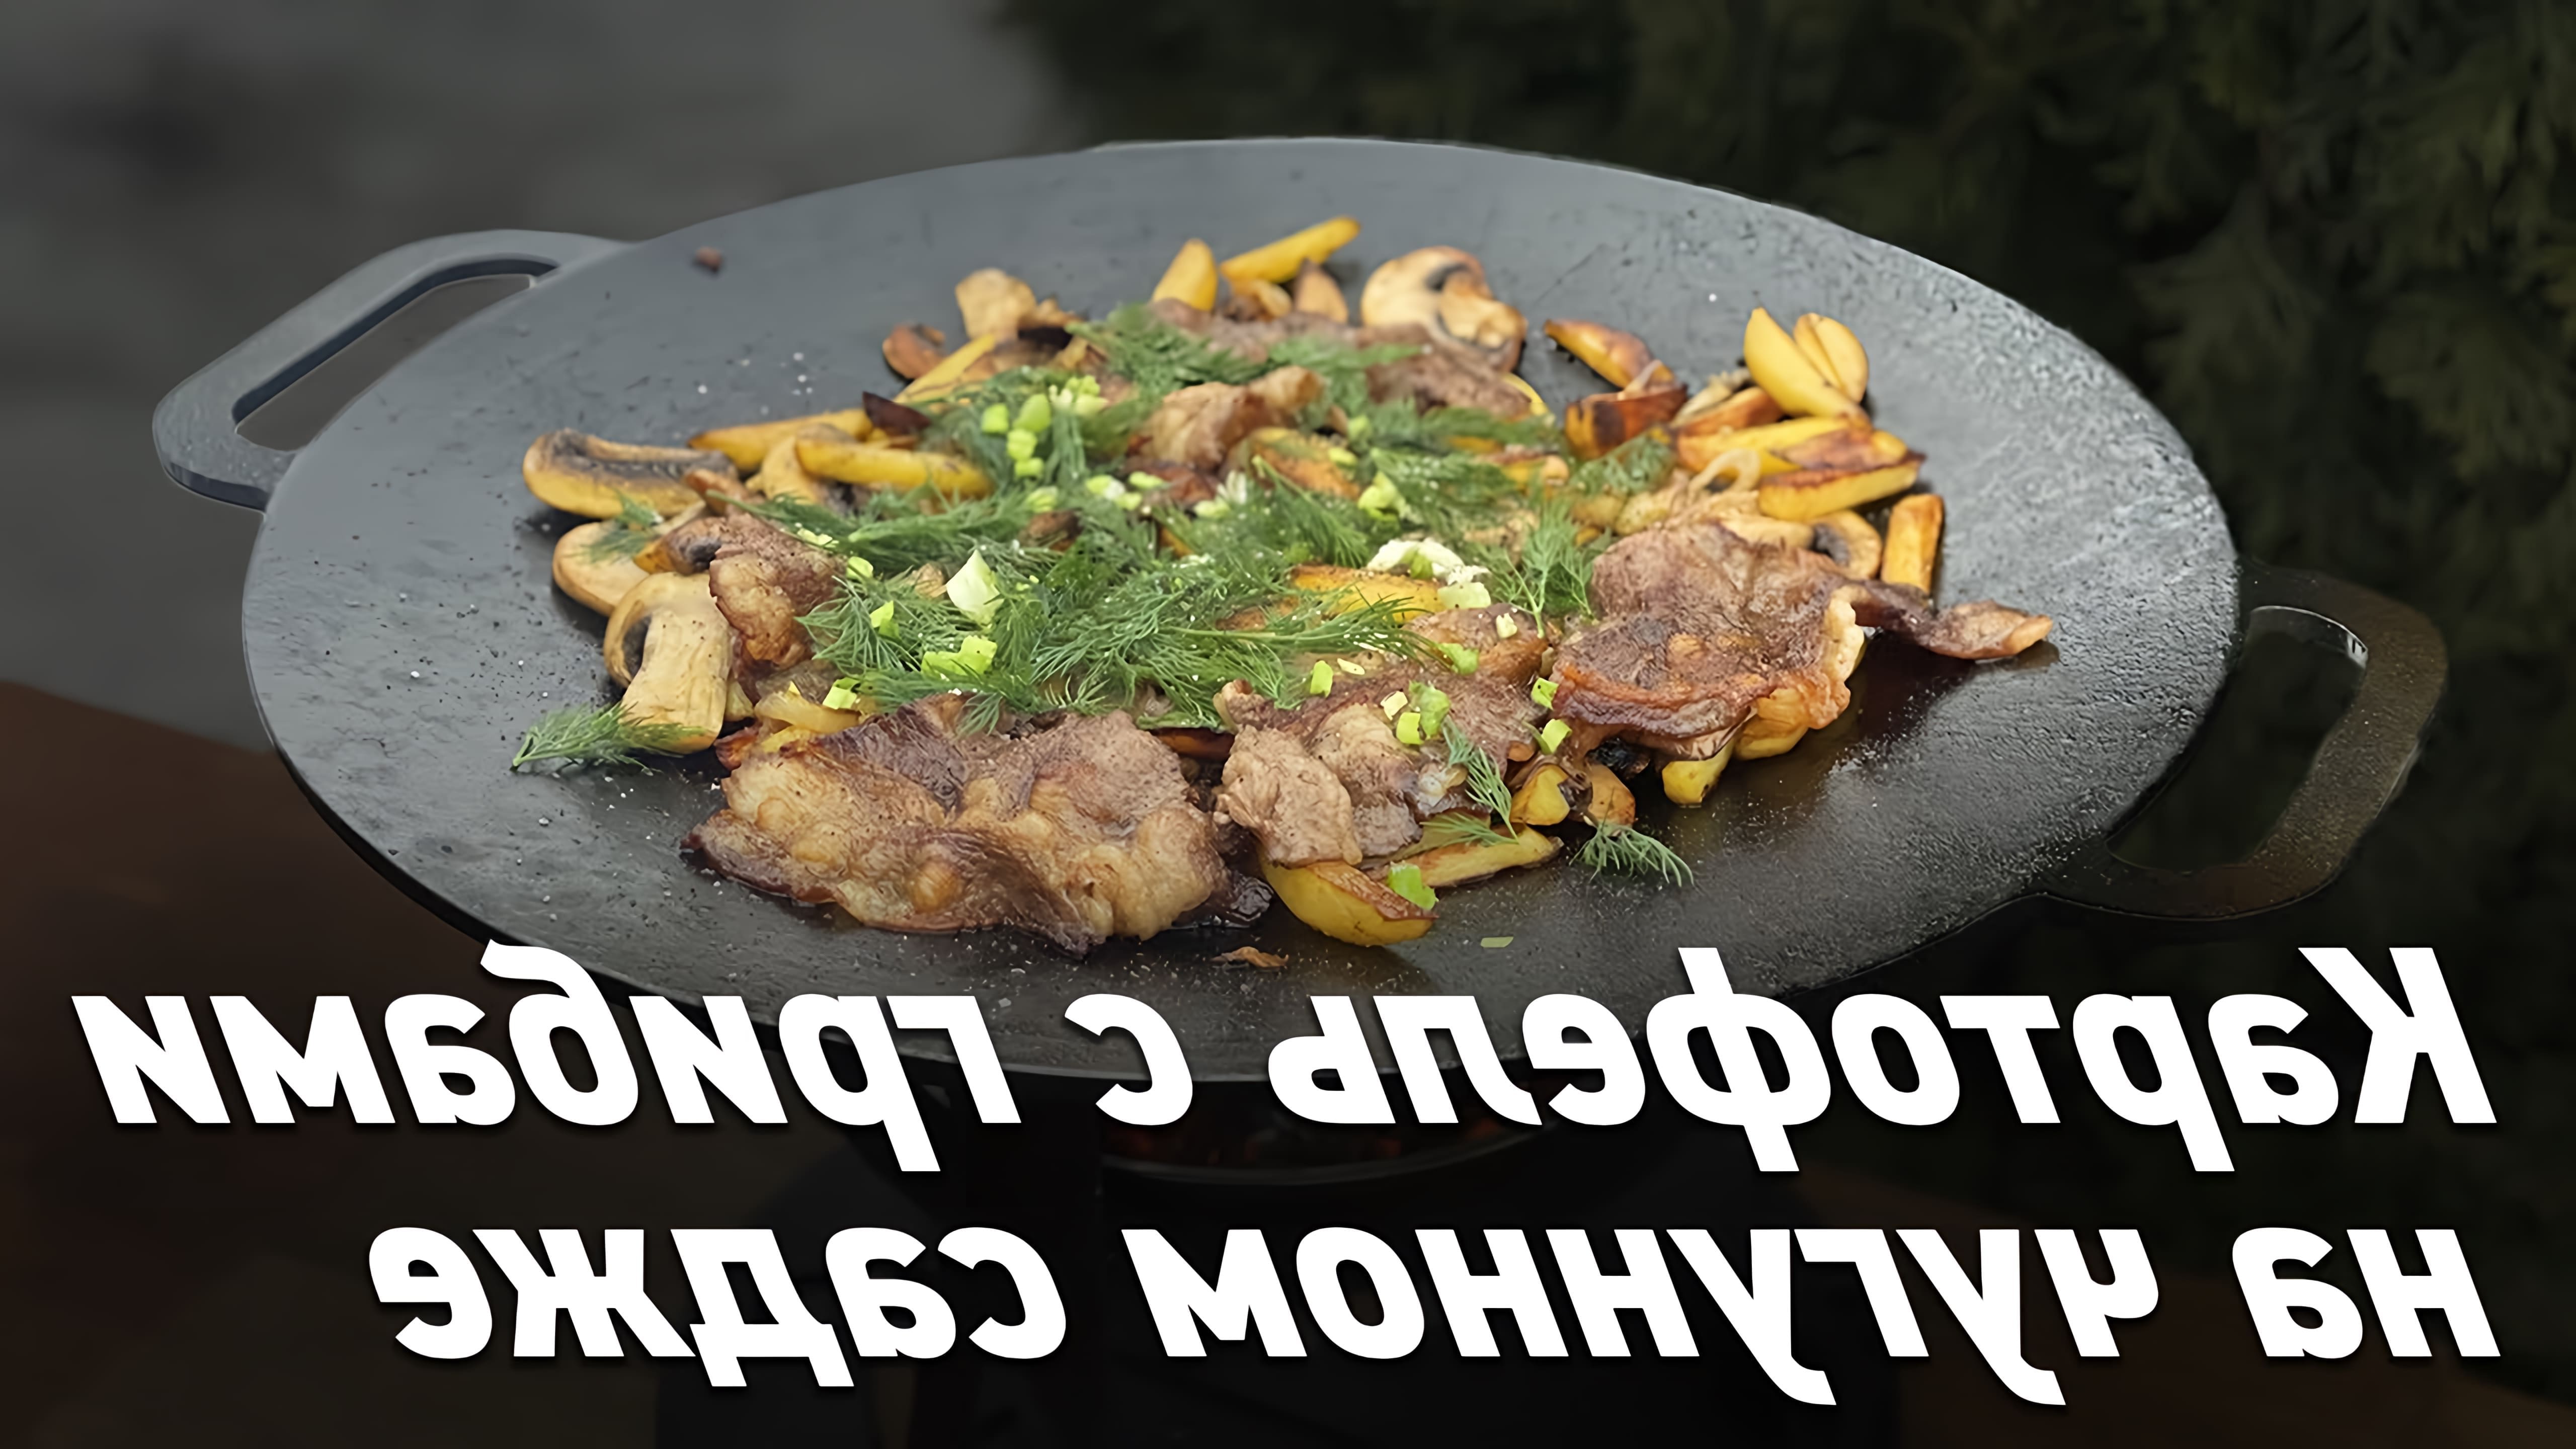 В этом видео демонстрируется процесс приготовления картофеля с грибами и беконом на чугунной сковороде садж